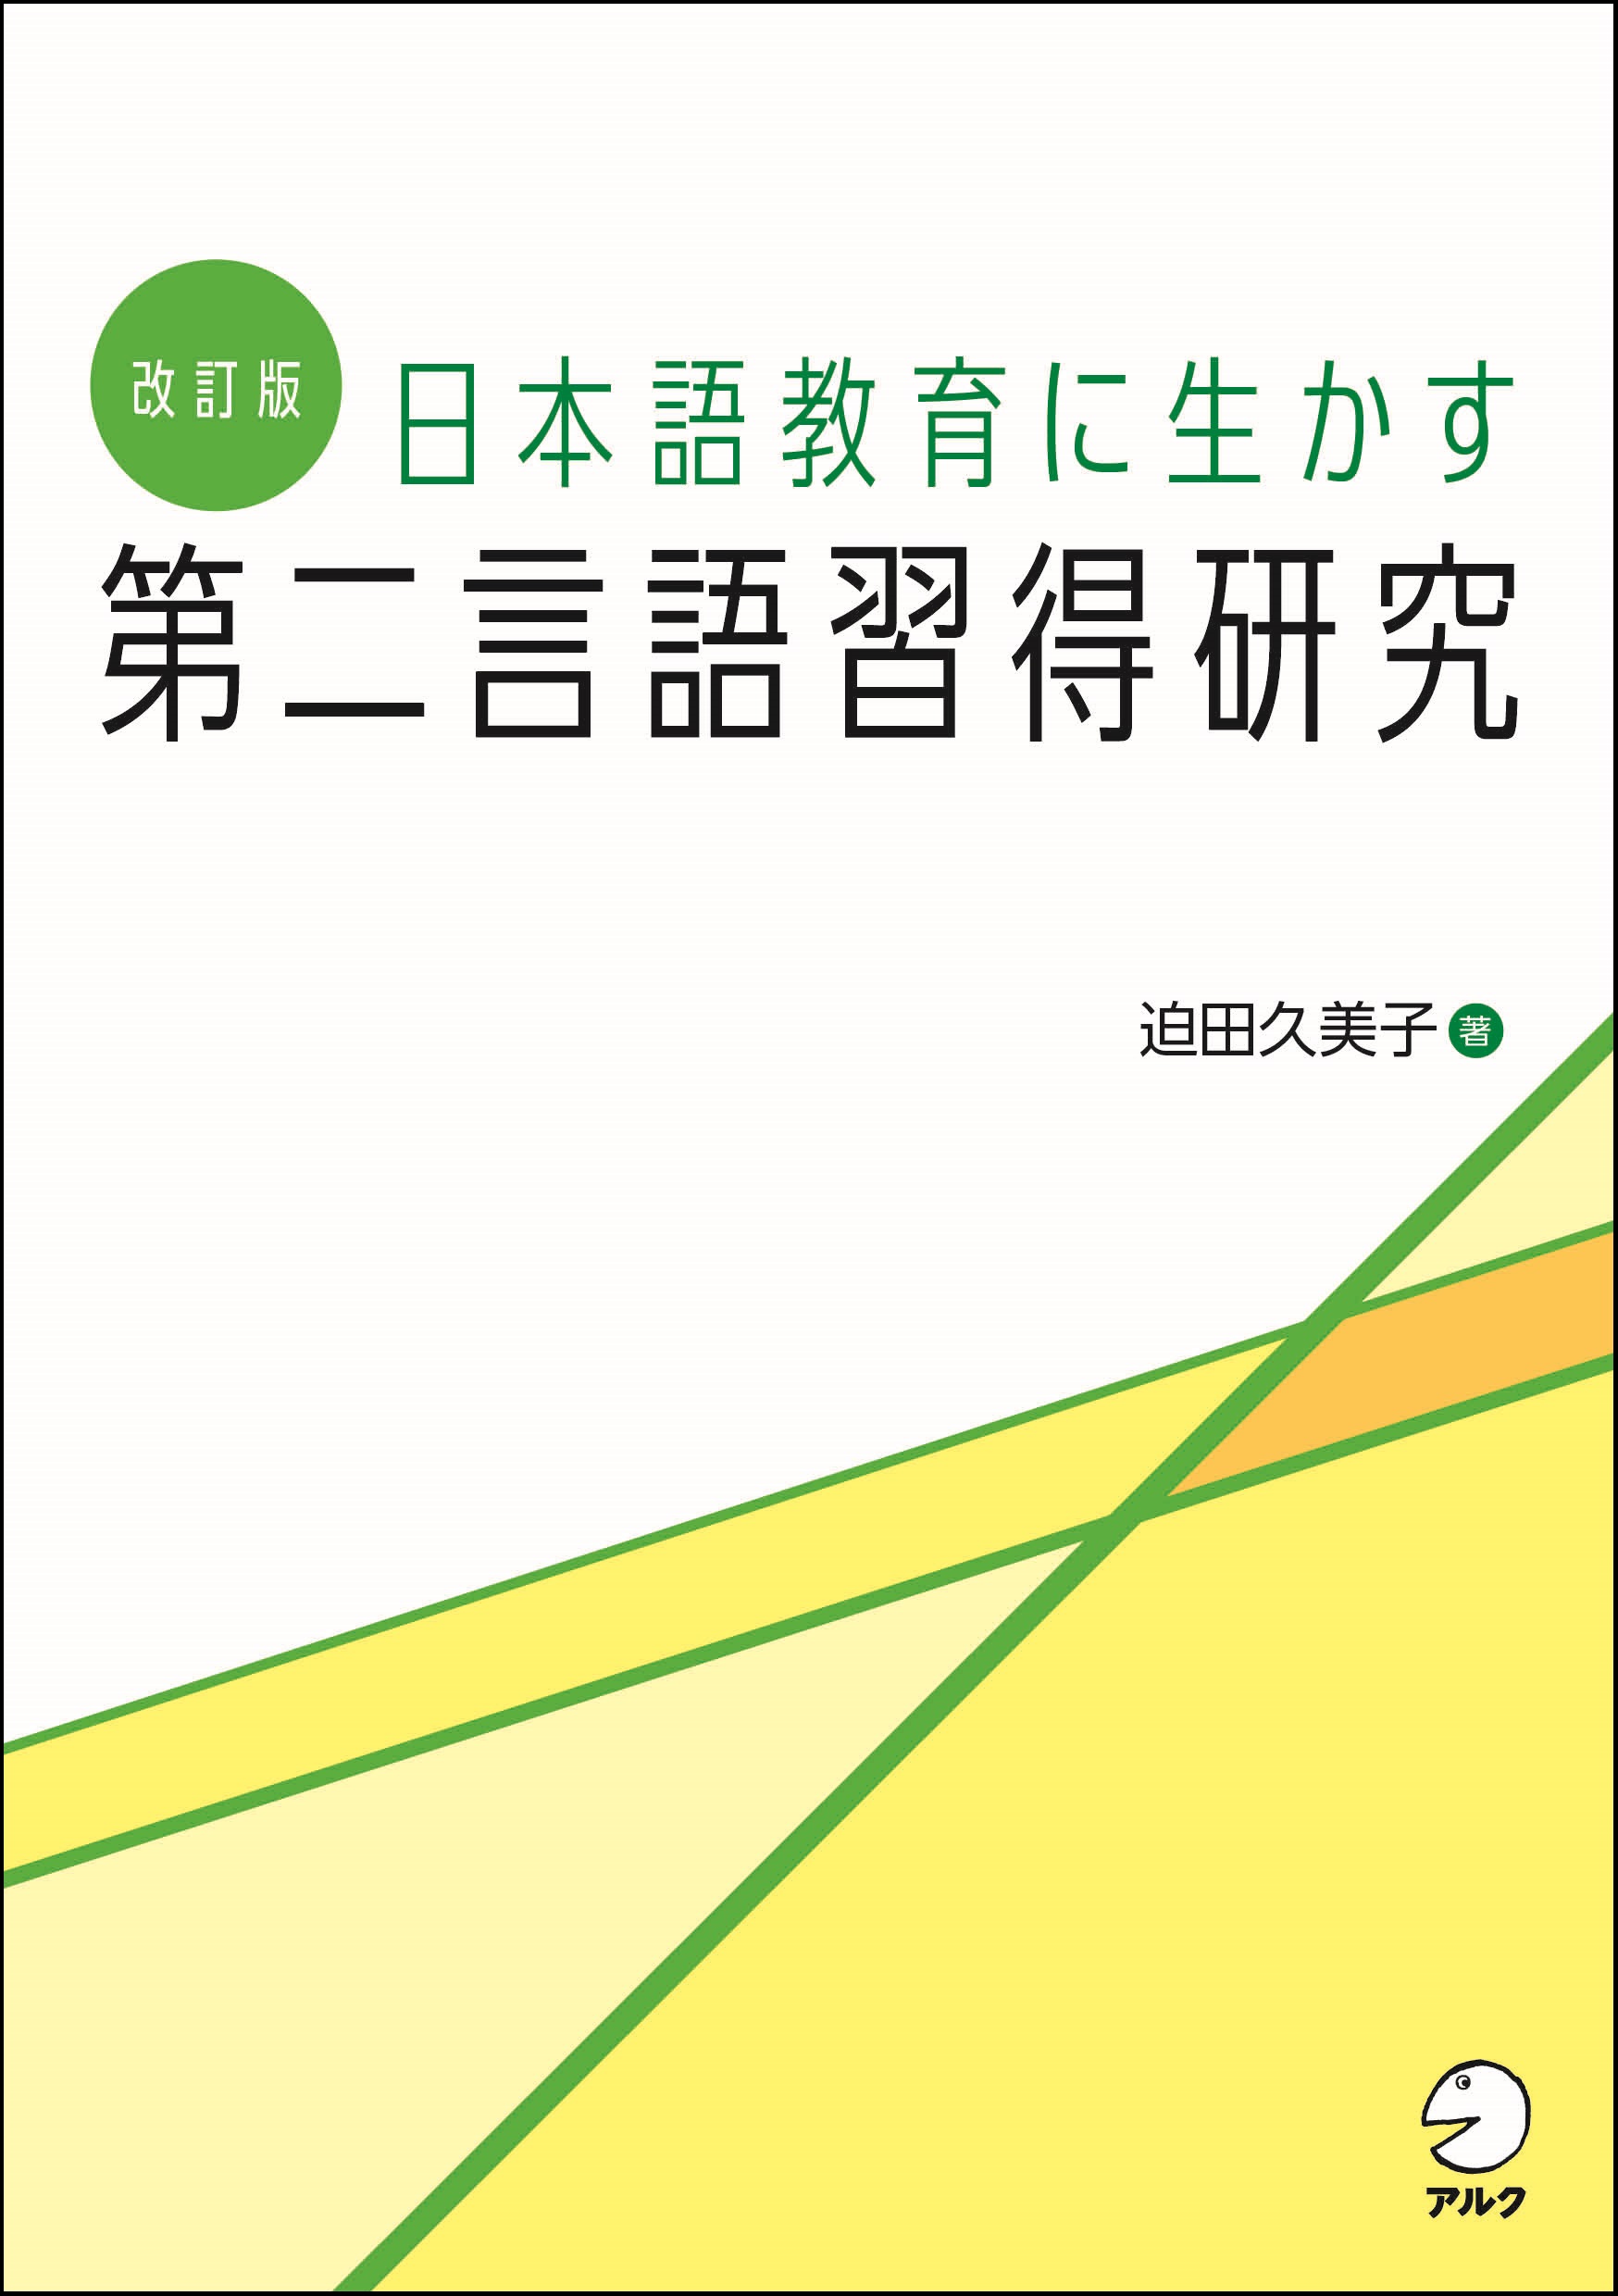 第二言語習得研究の入門書『改訂版 日本語教育に生かす 第二言語習得研究』3月19日発売